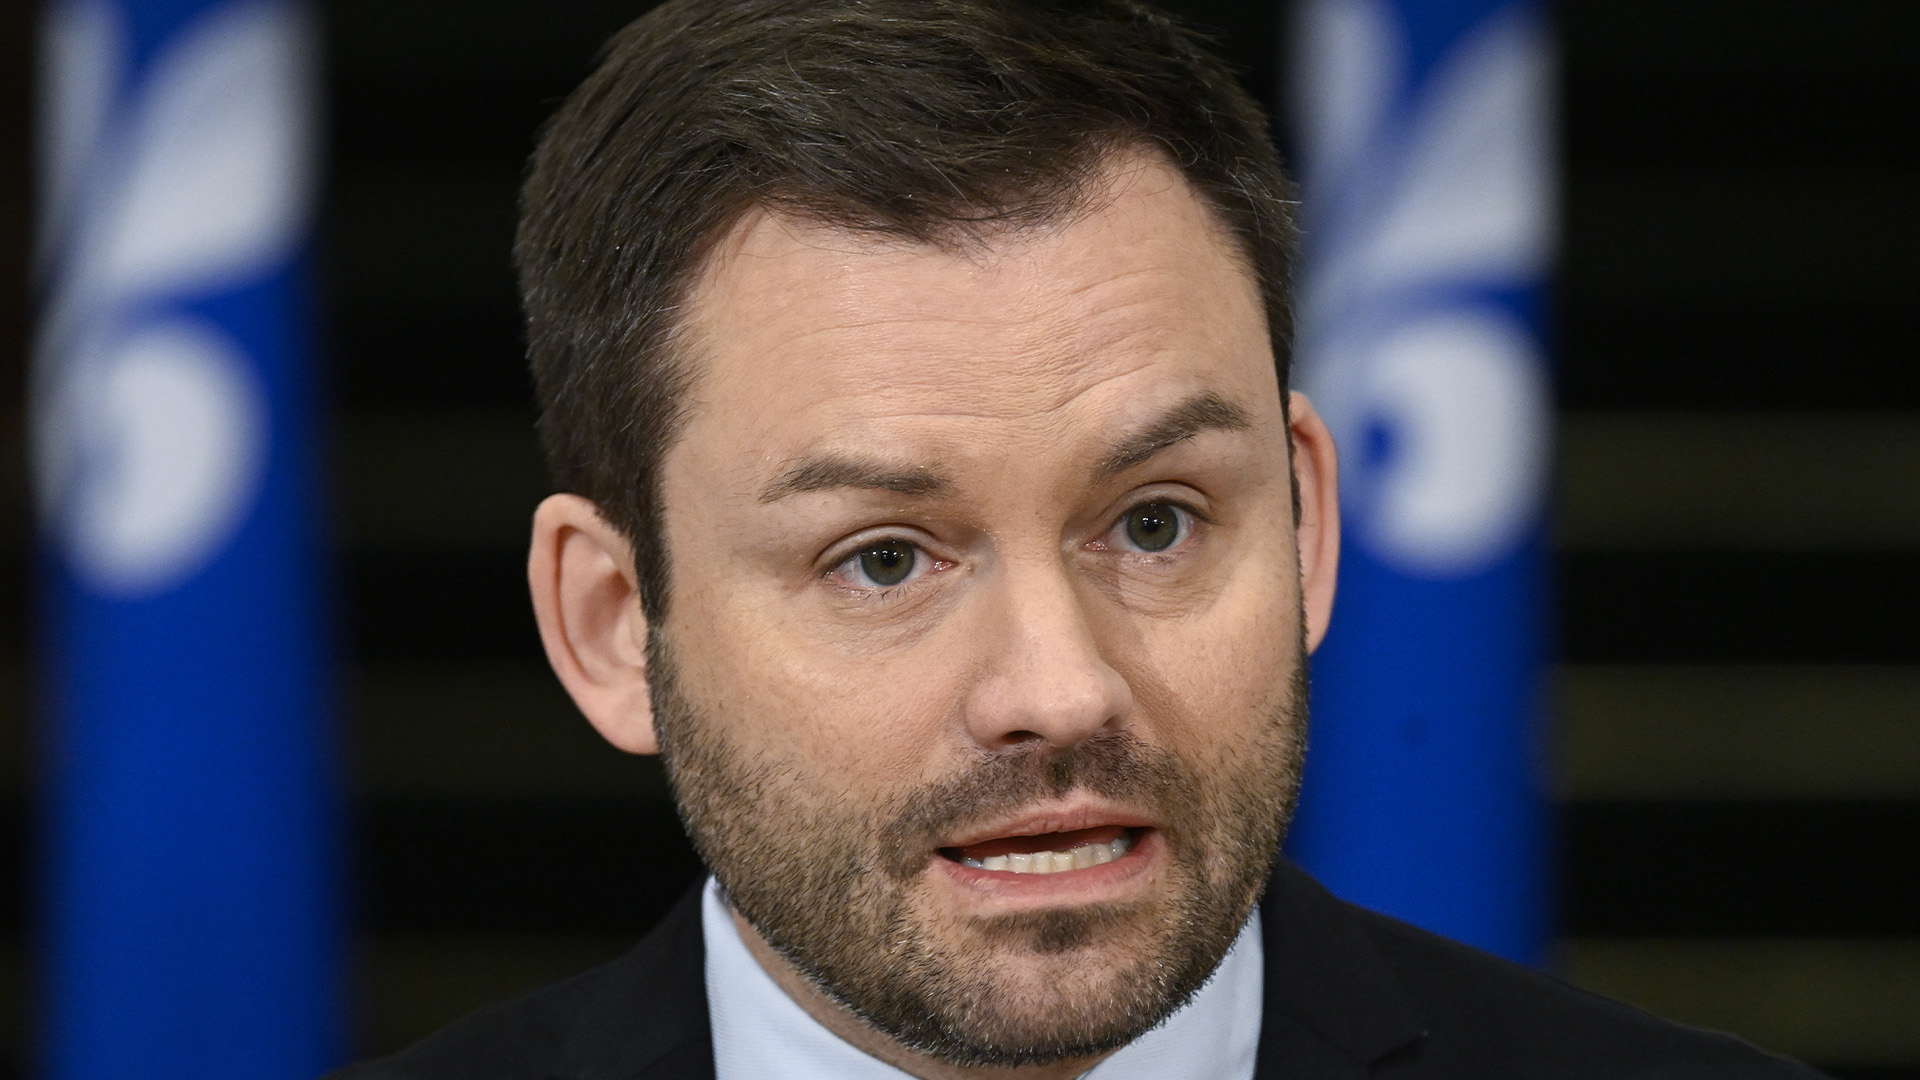 Le chef du Parti québécois, Paul St-Pierre Plamondon, à l'Assemblée législative de Québec, le vendredi 9 décembre 2022.